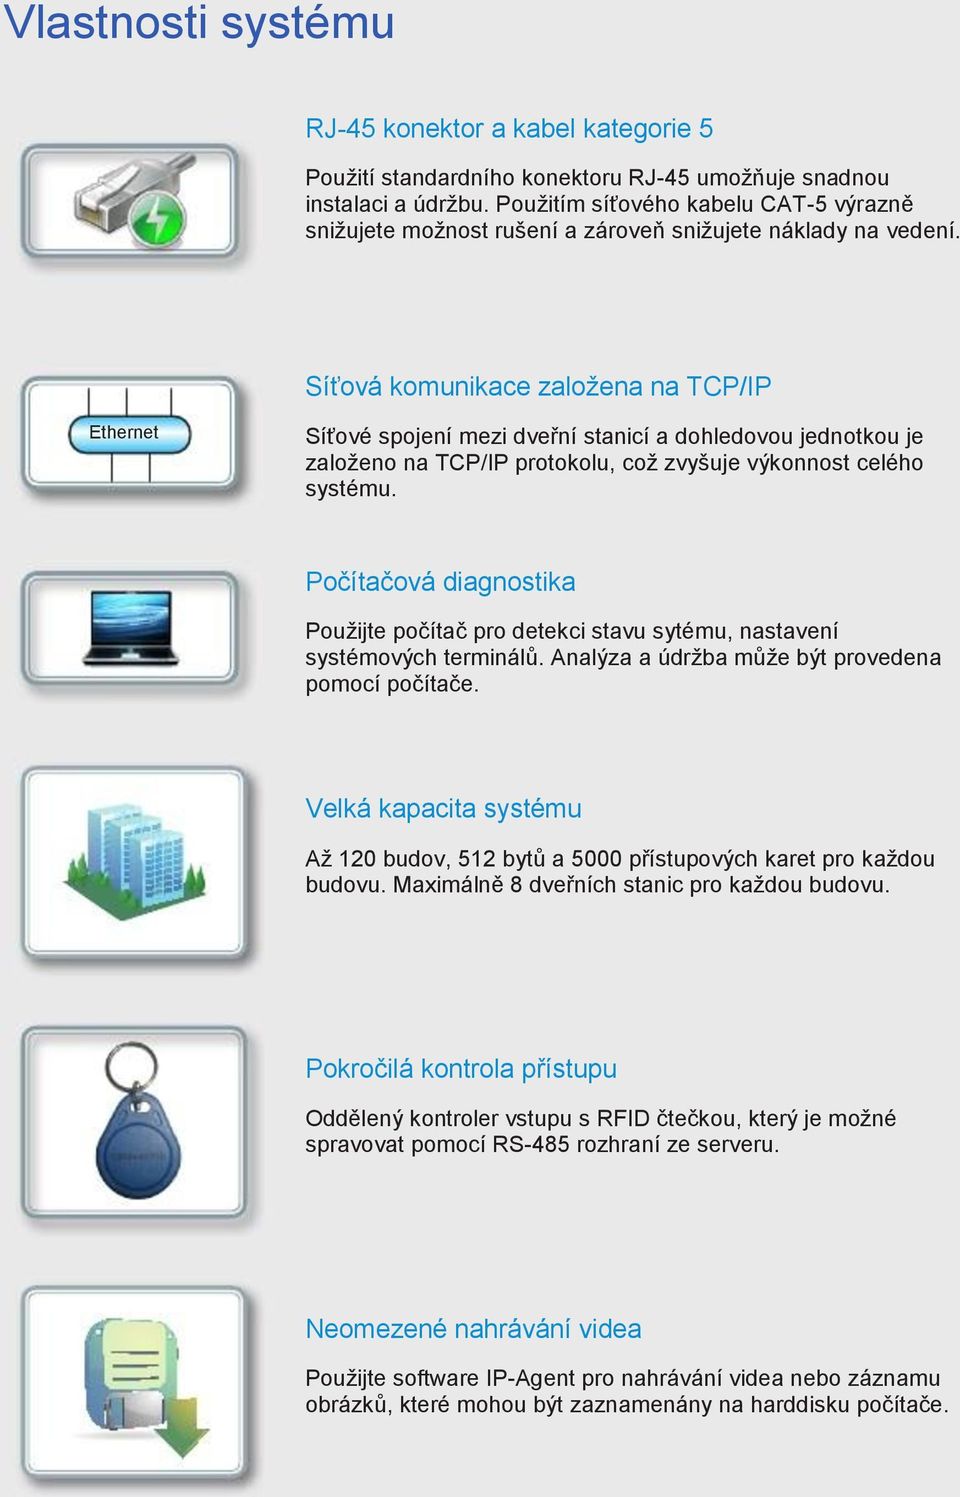 Síťová komunikace založena na TCP/IP Ethernet Síťové spojení mezi dveřní stanicí a dohledovou jednotkou je založeno na TCP/IP protokolu, což zvyšuje výkonnost celého systému.